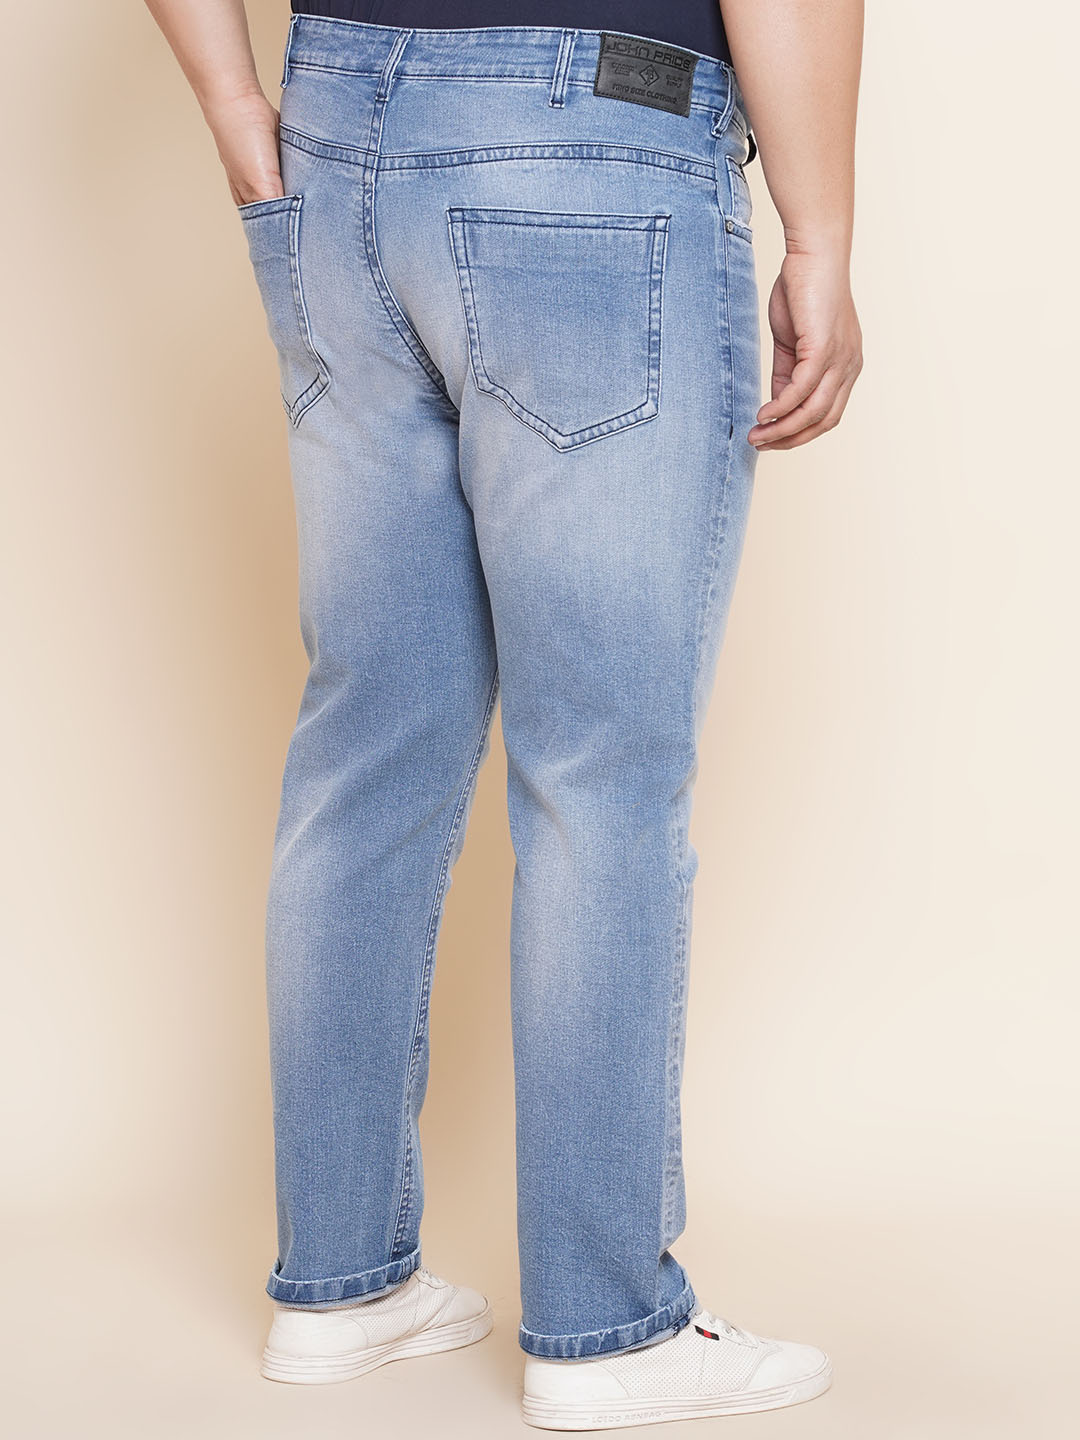 bottomwear/jeans/JPJ27018/jpj27018-5.jpg